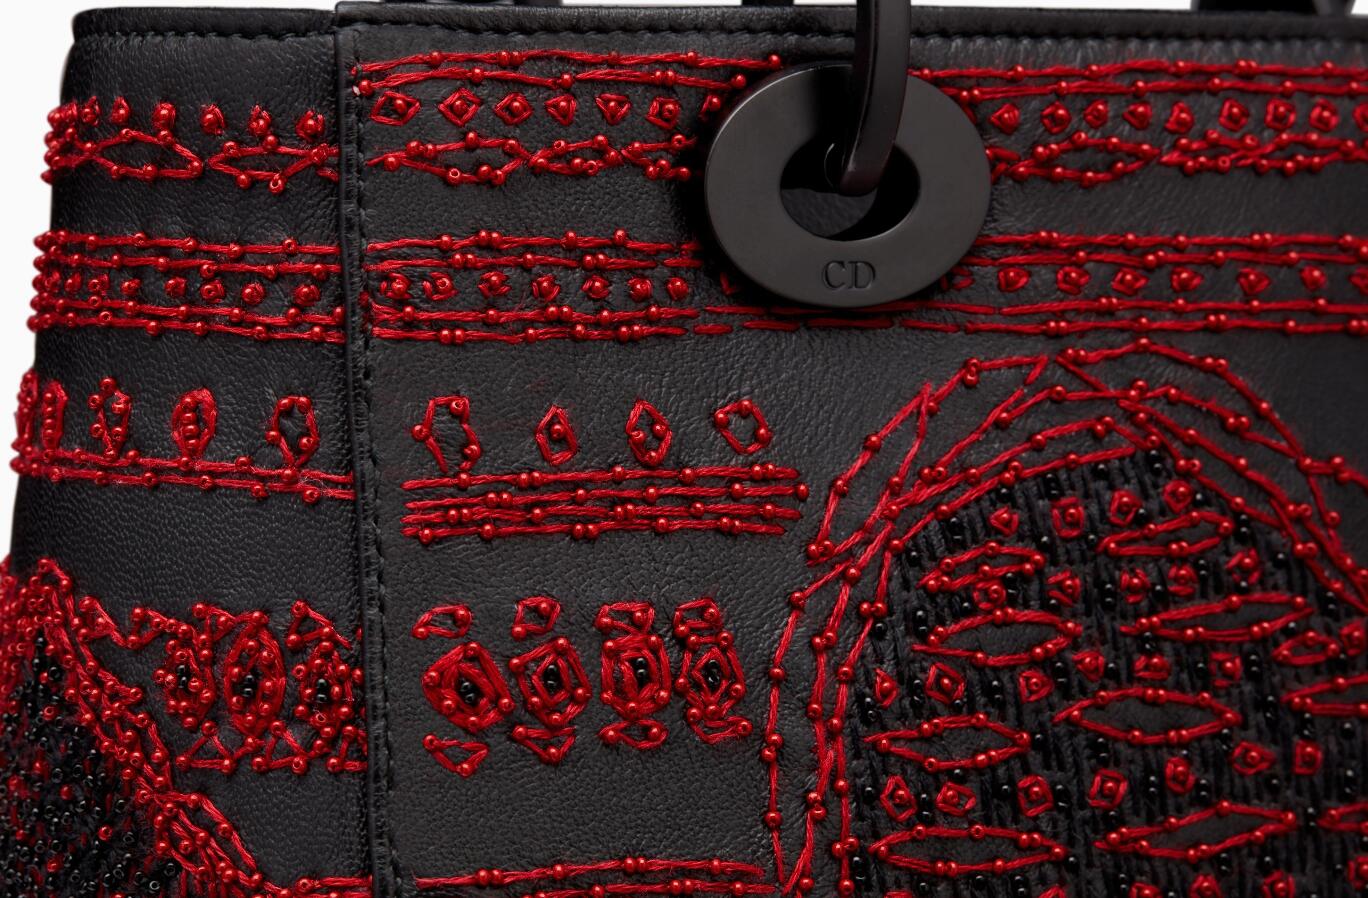 迪奥dior戴妃包 Lady Dior黑色光滑小牛皮柔软手提包 缀红黑色圆珠 卡牌图案刺绣